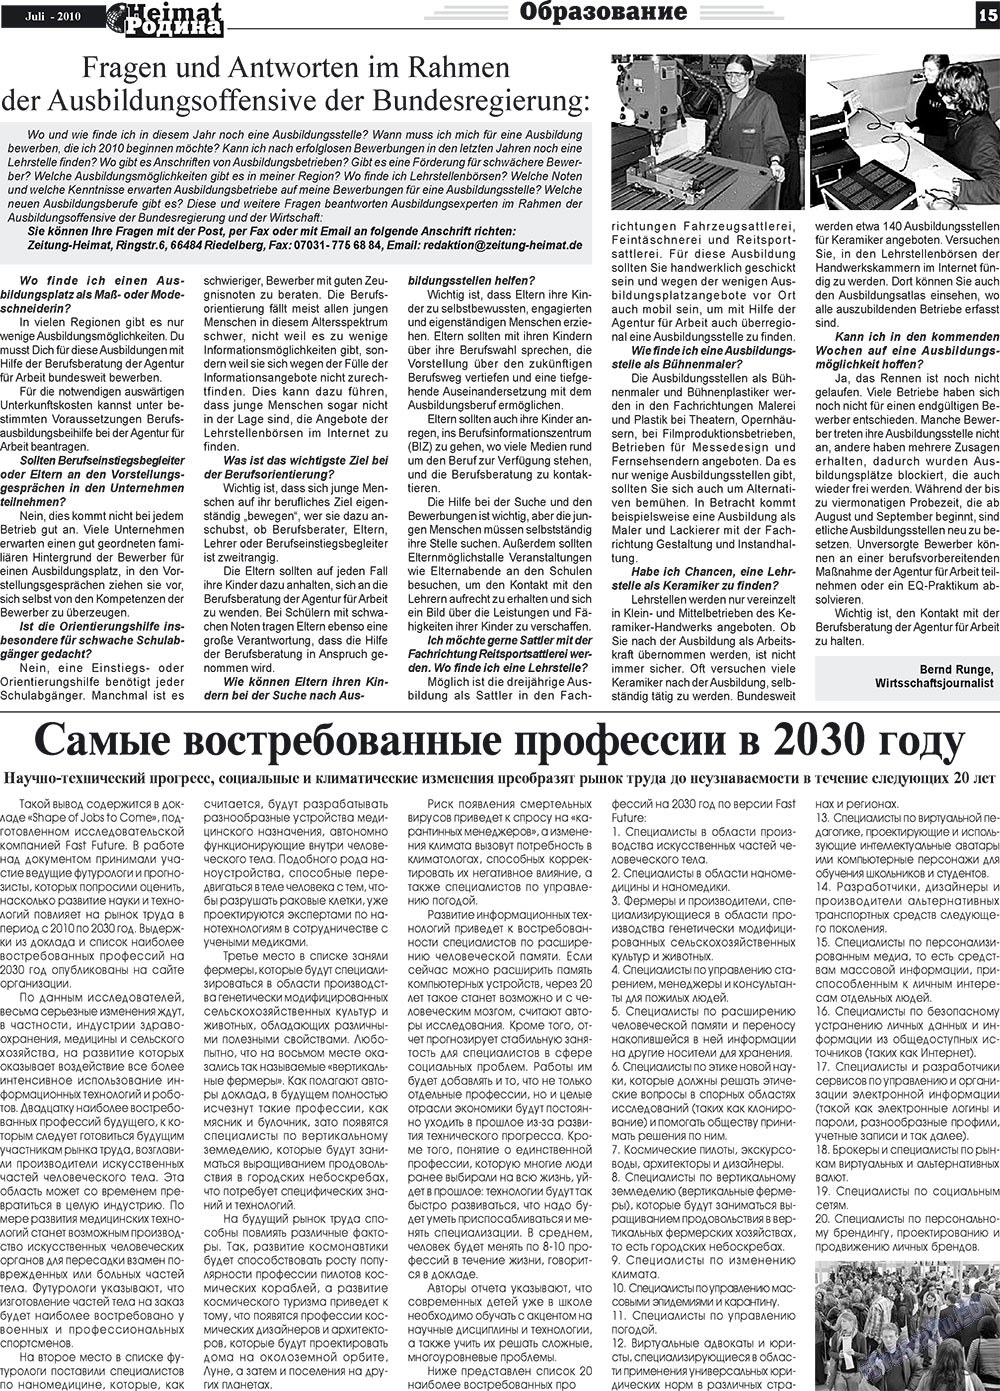 Heimat-Родина (газета). 2010 год, номер 7, стр. 15